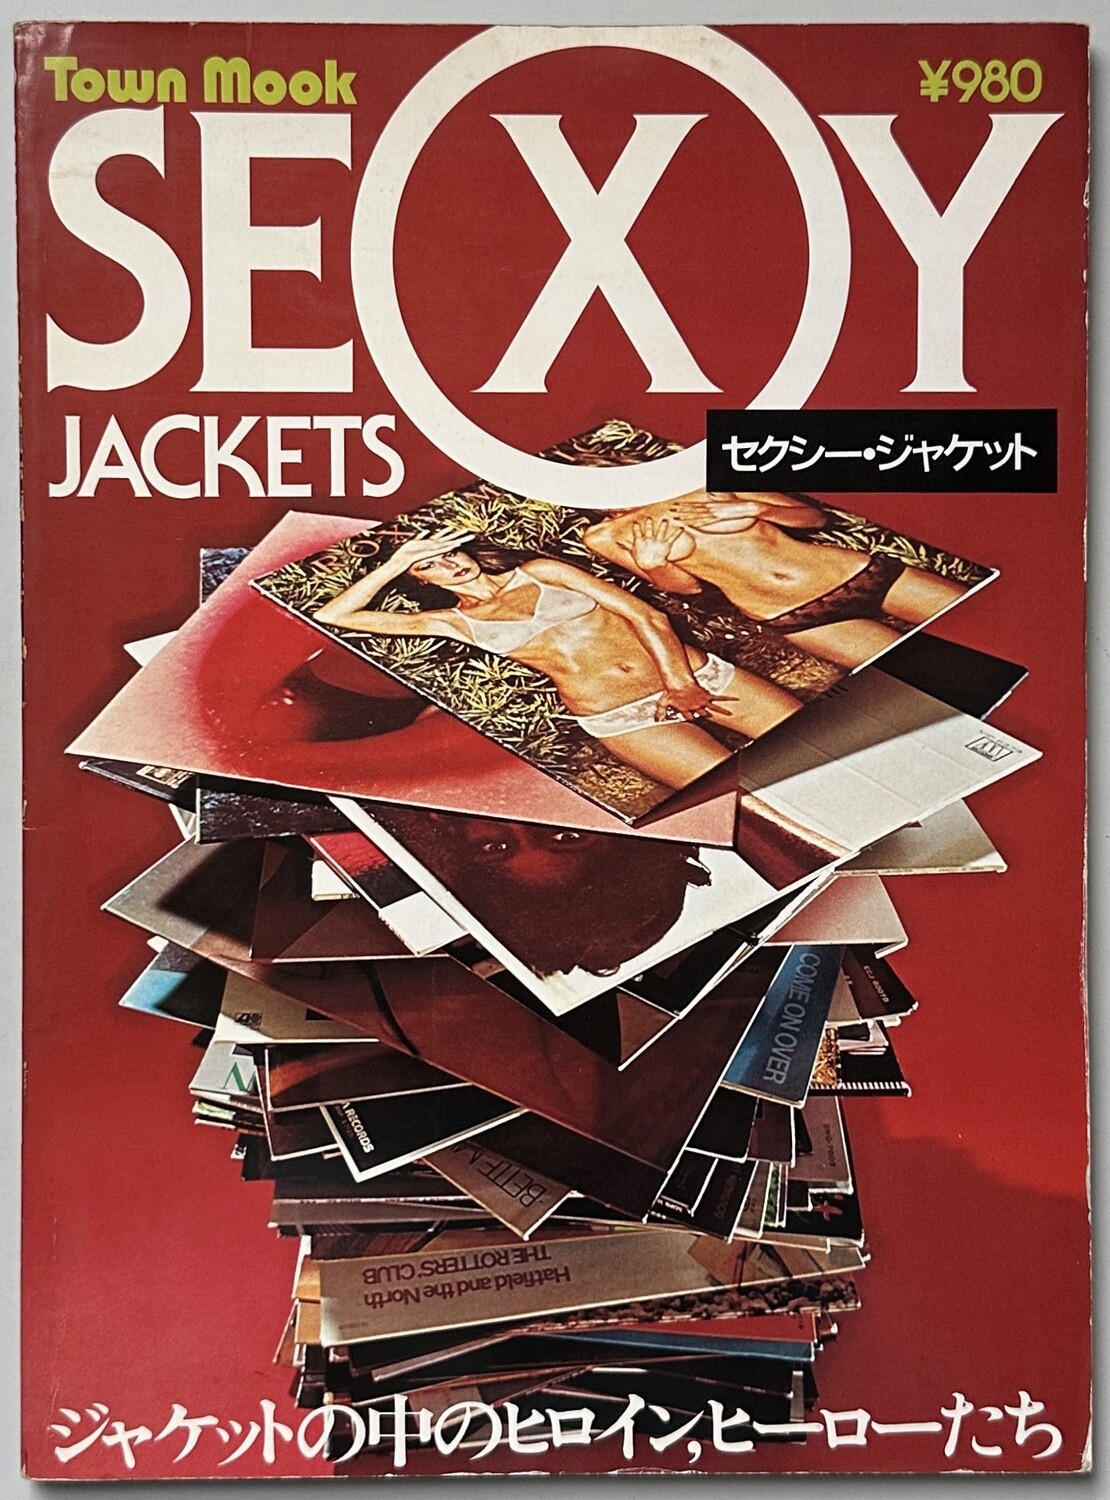 Saxy Vedo Jazz Boom - Sexy Jackets